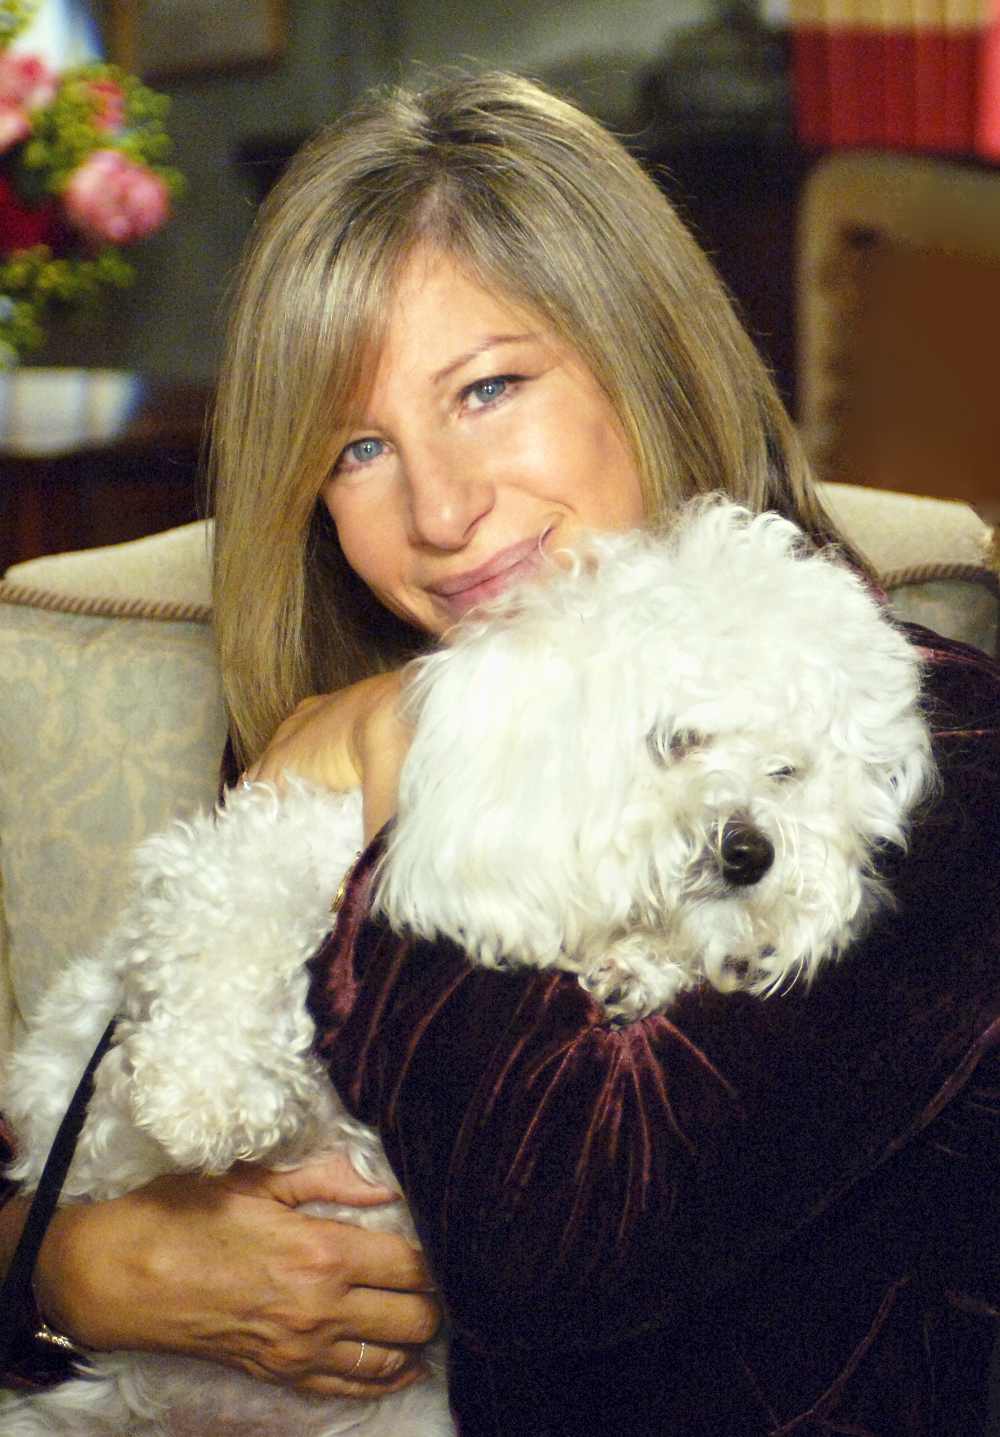 Barbra Streisand with her dog Samantha